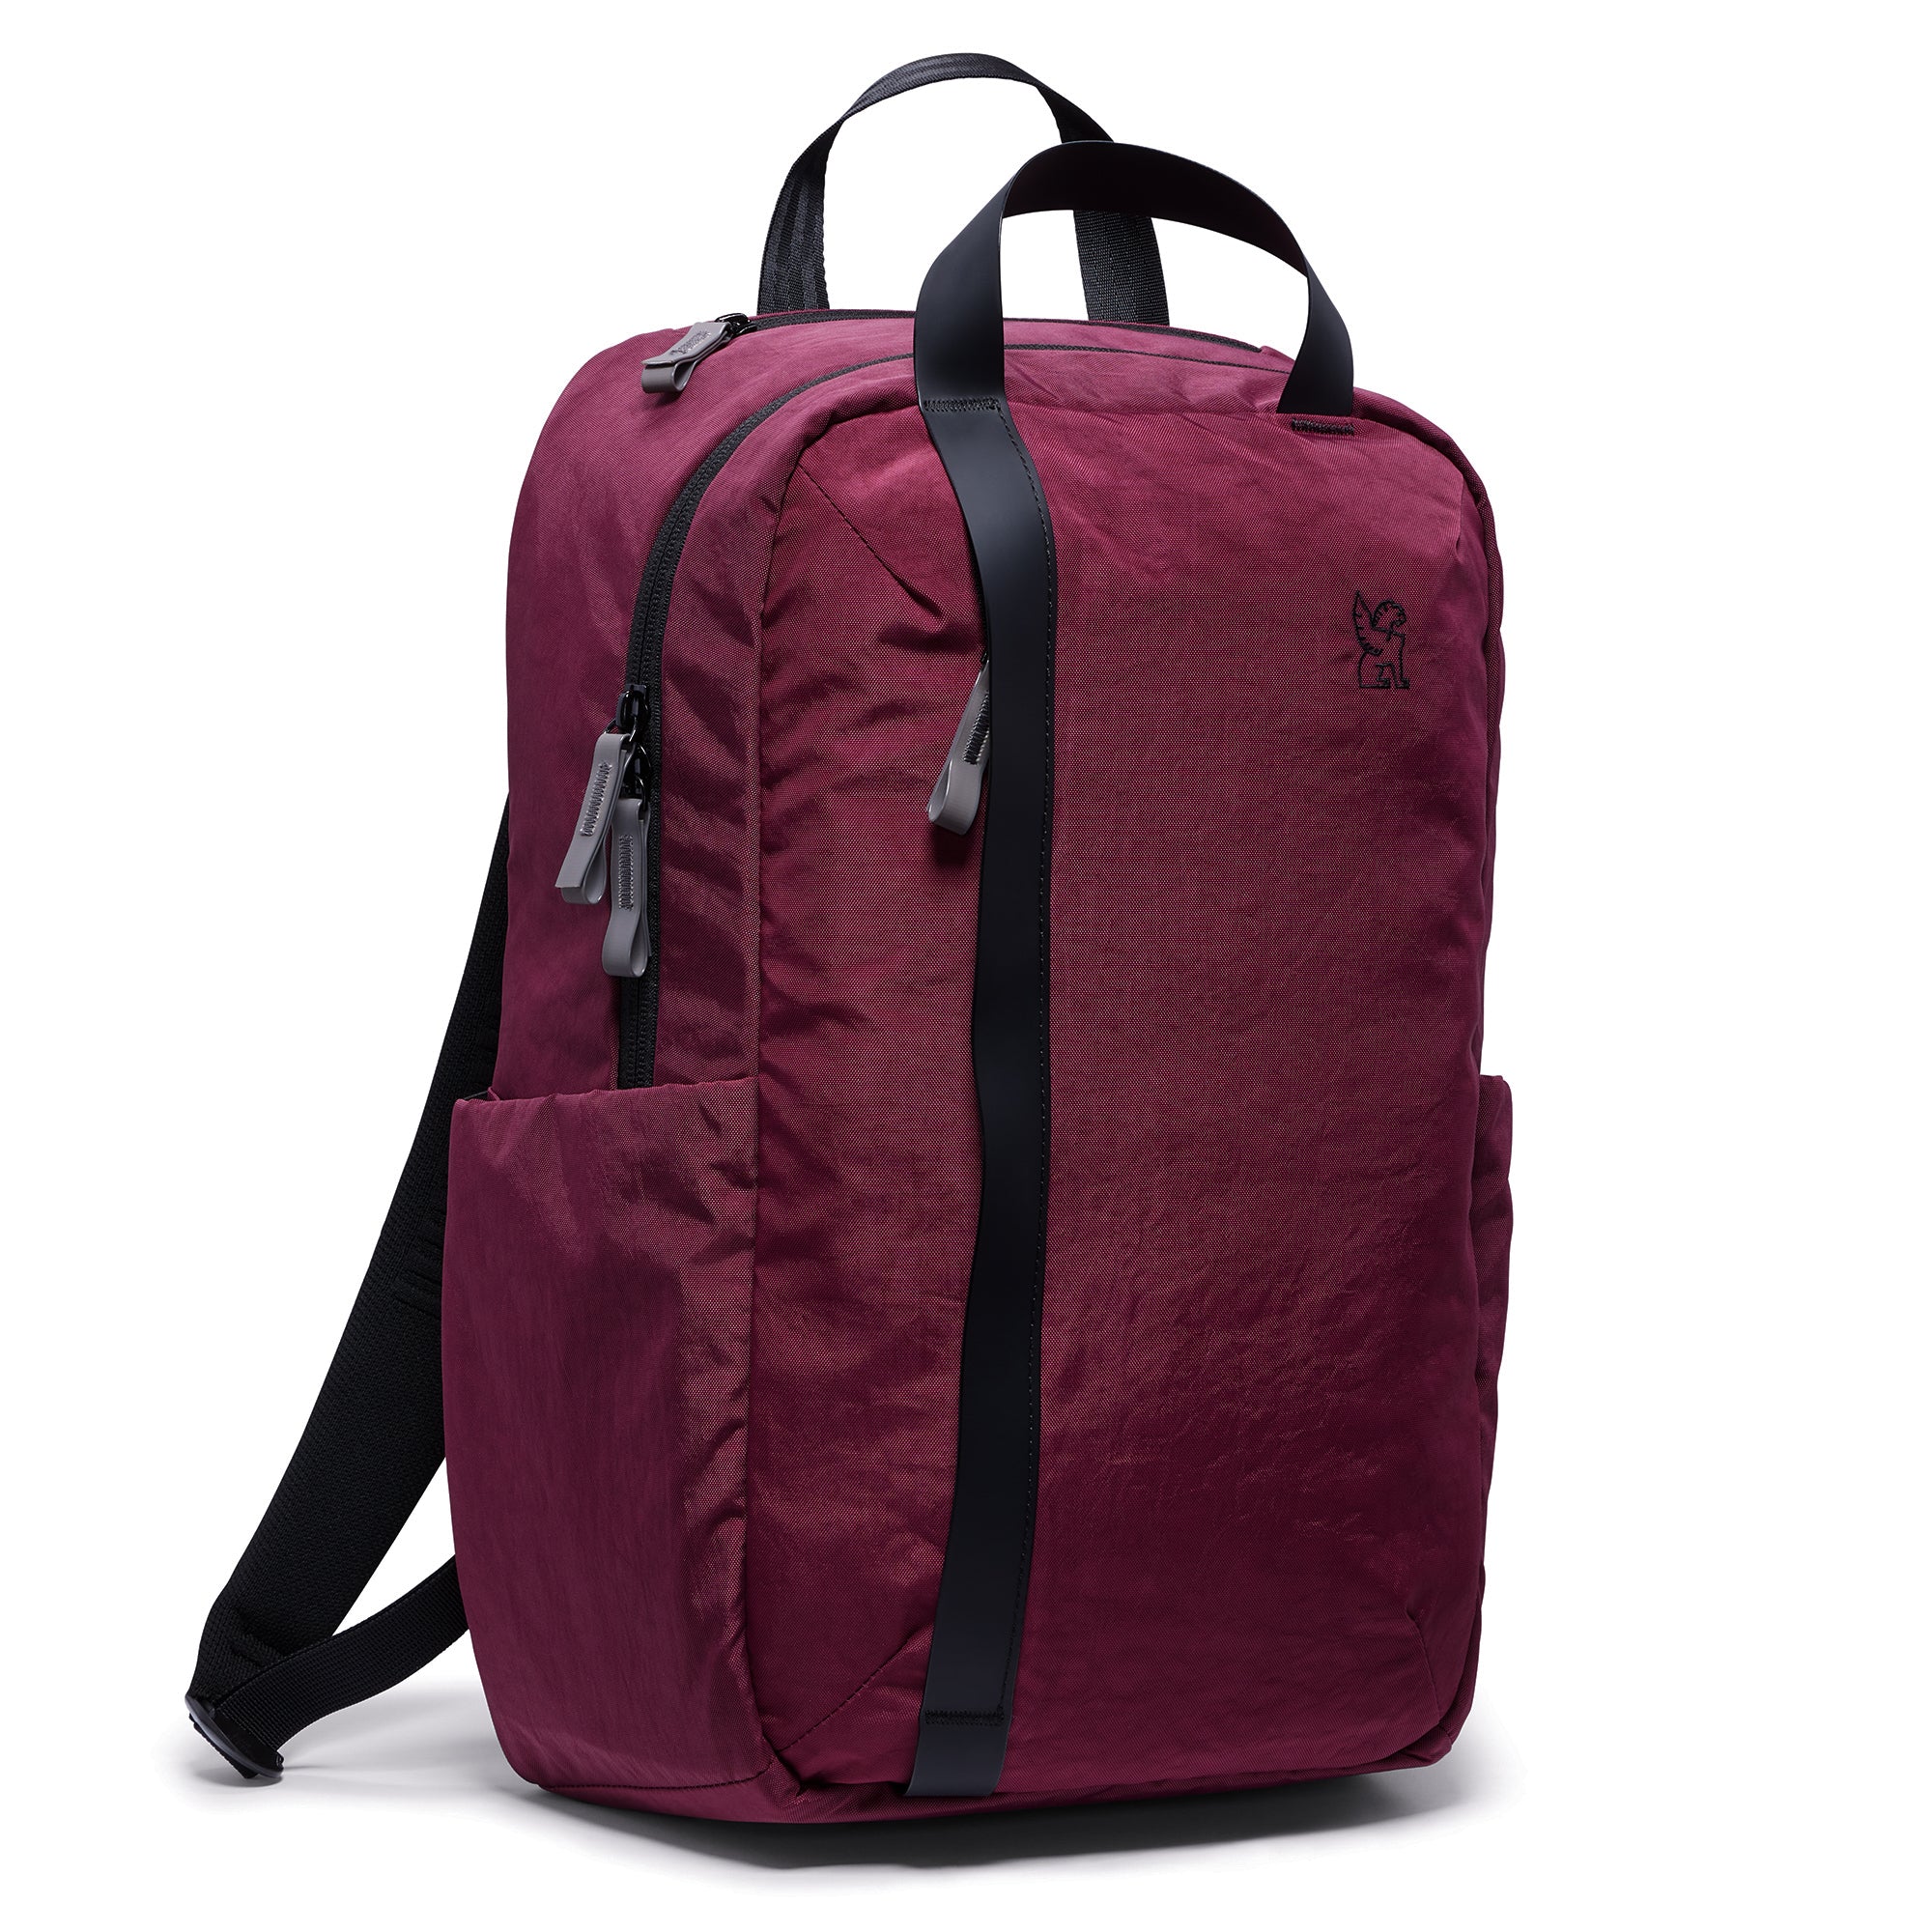 Highline 20L backpack in royale #color_royale